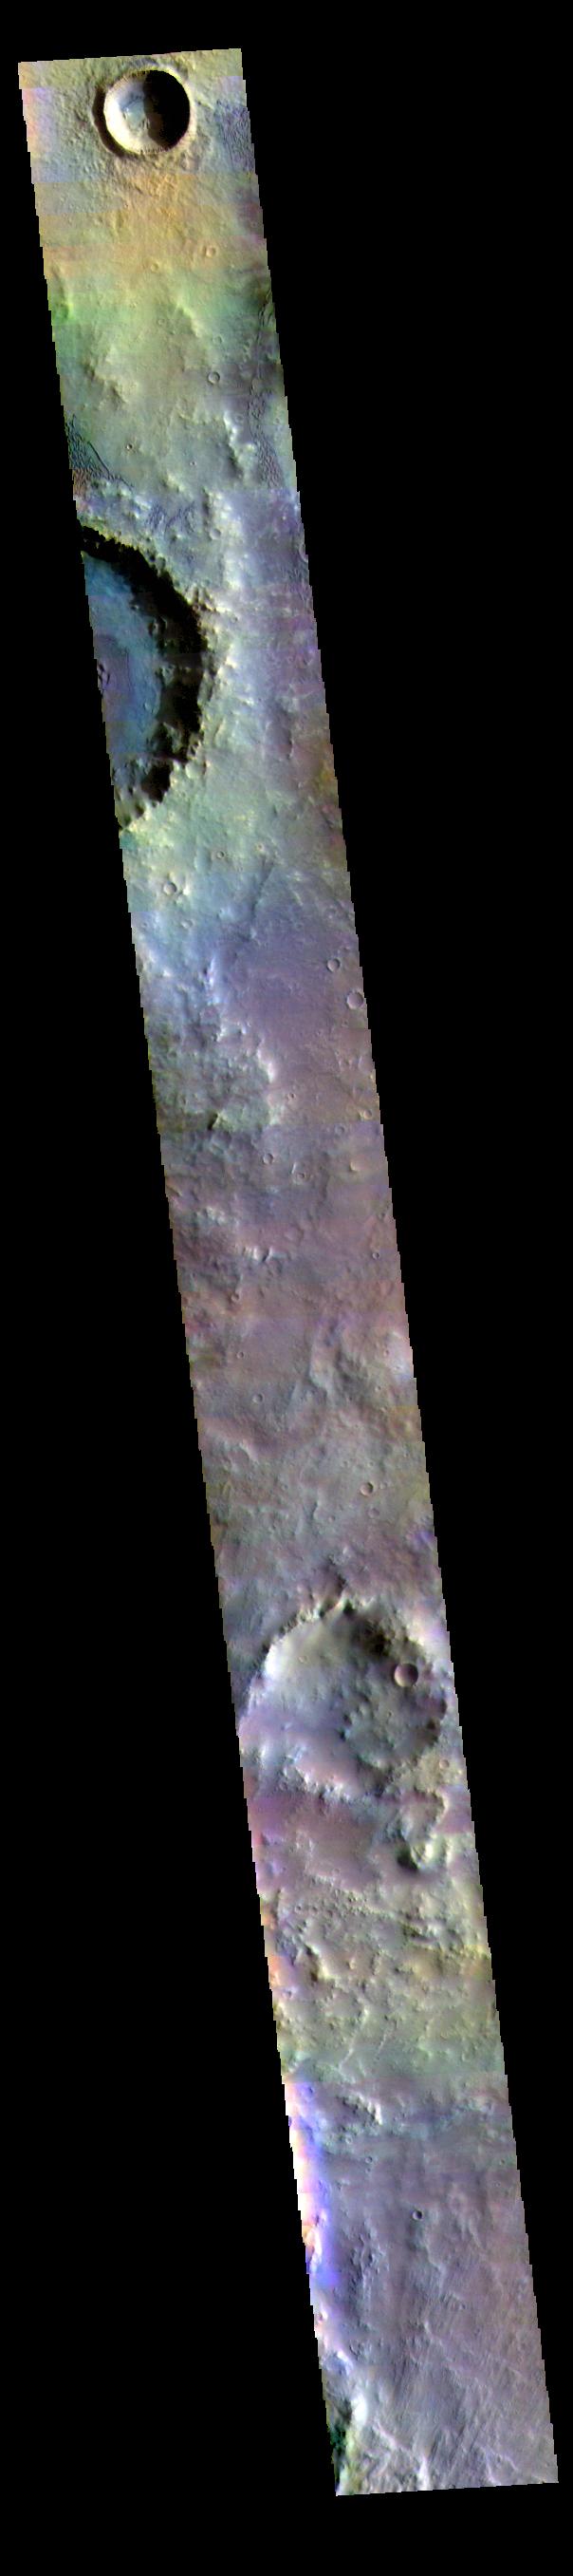 PIA24517: Herschel Crater - False Color